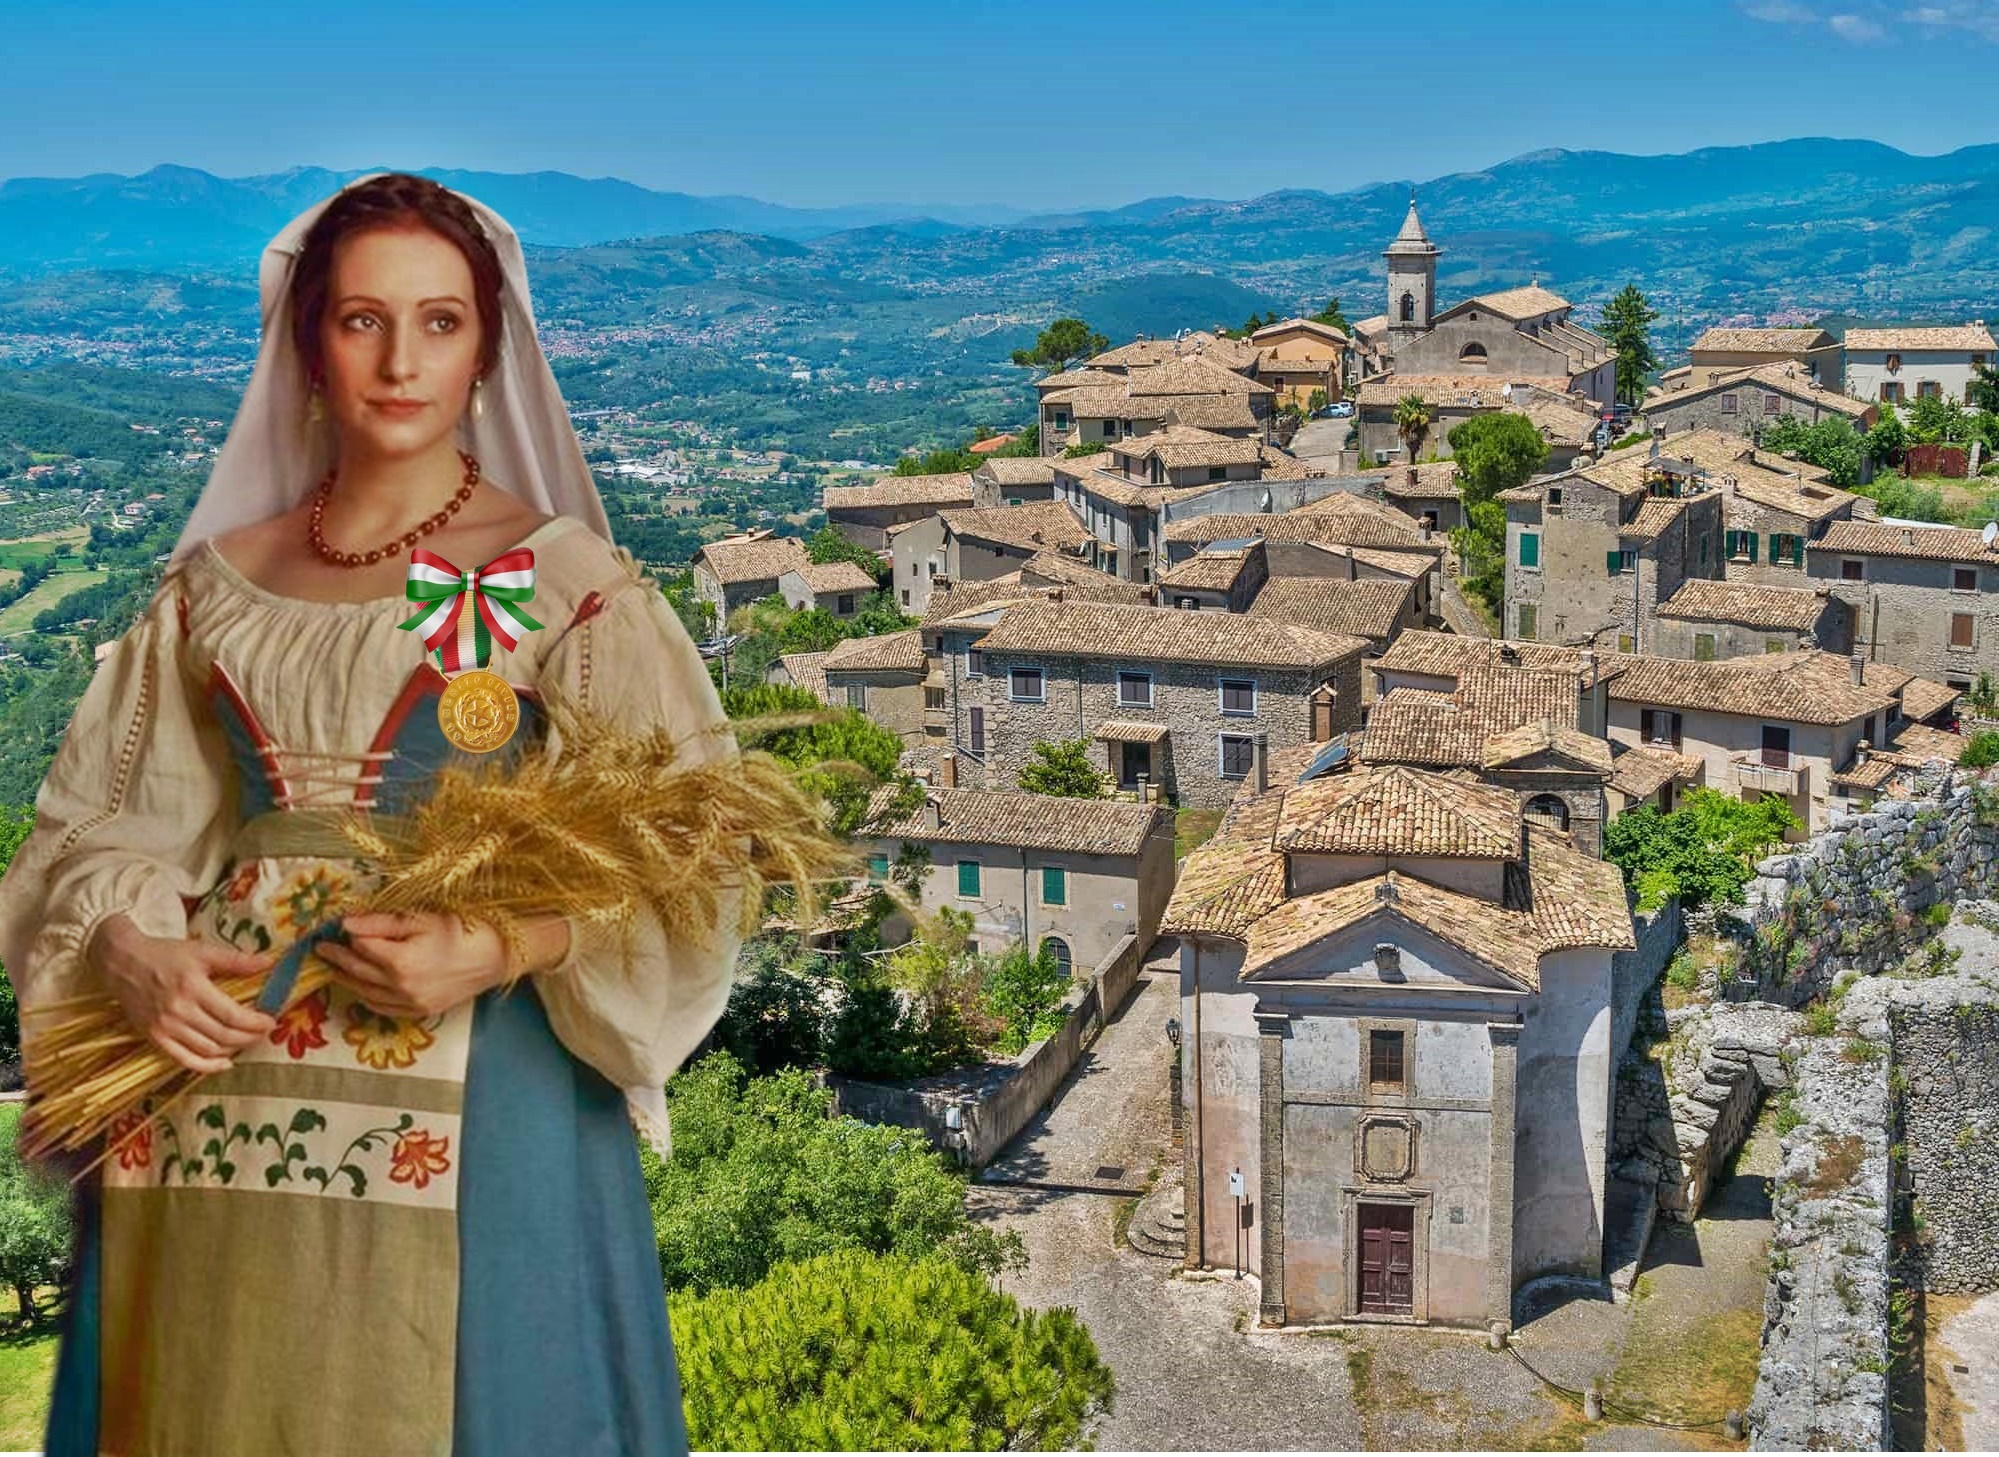 Goldmedaille für bürgerliche Verdienste für die Provinz Frosinone. Ciociaro-Kostüm auf dem Foto